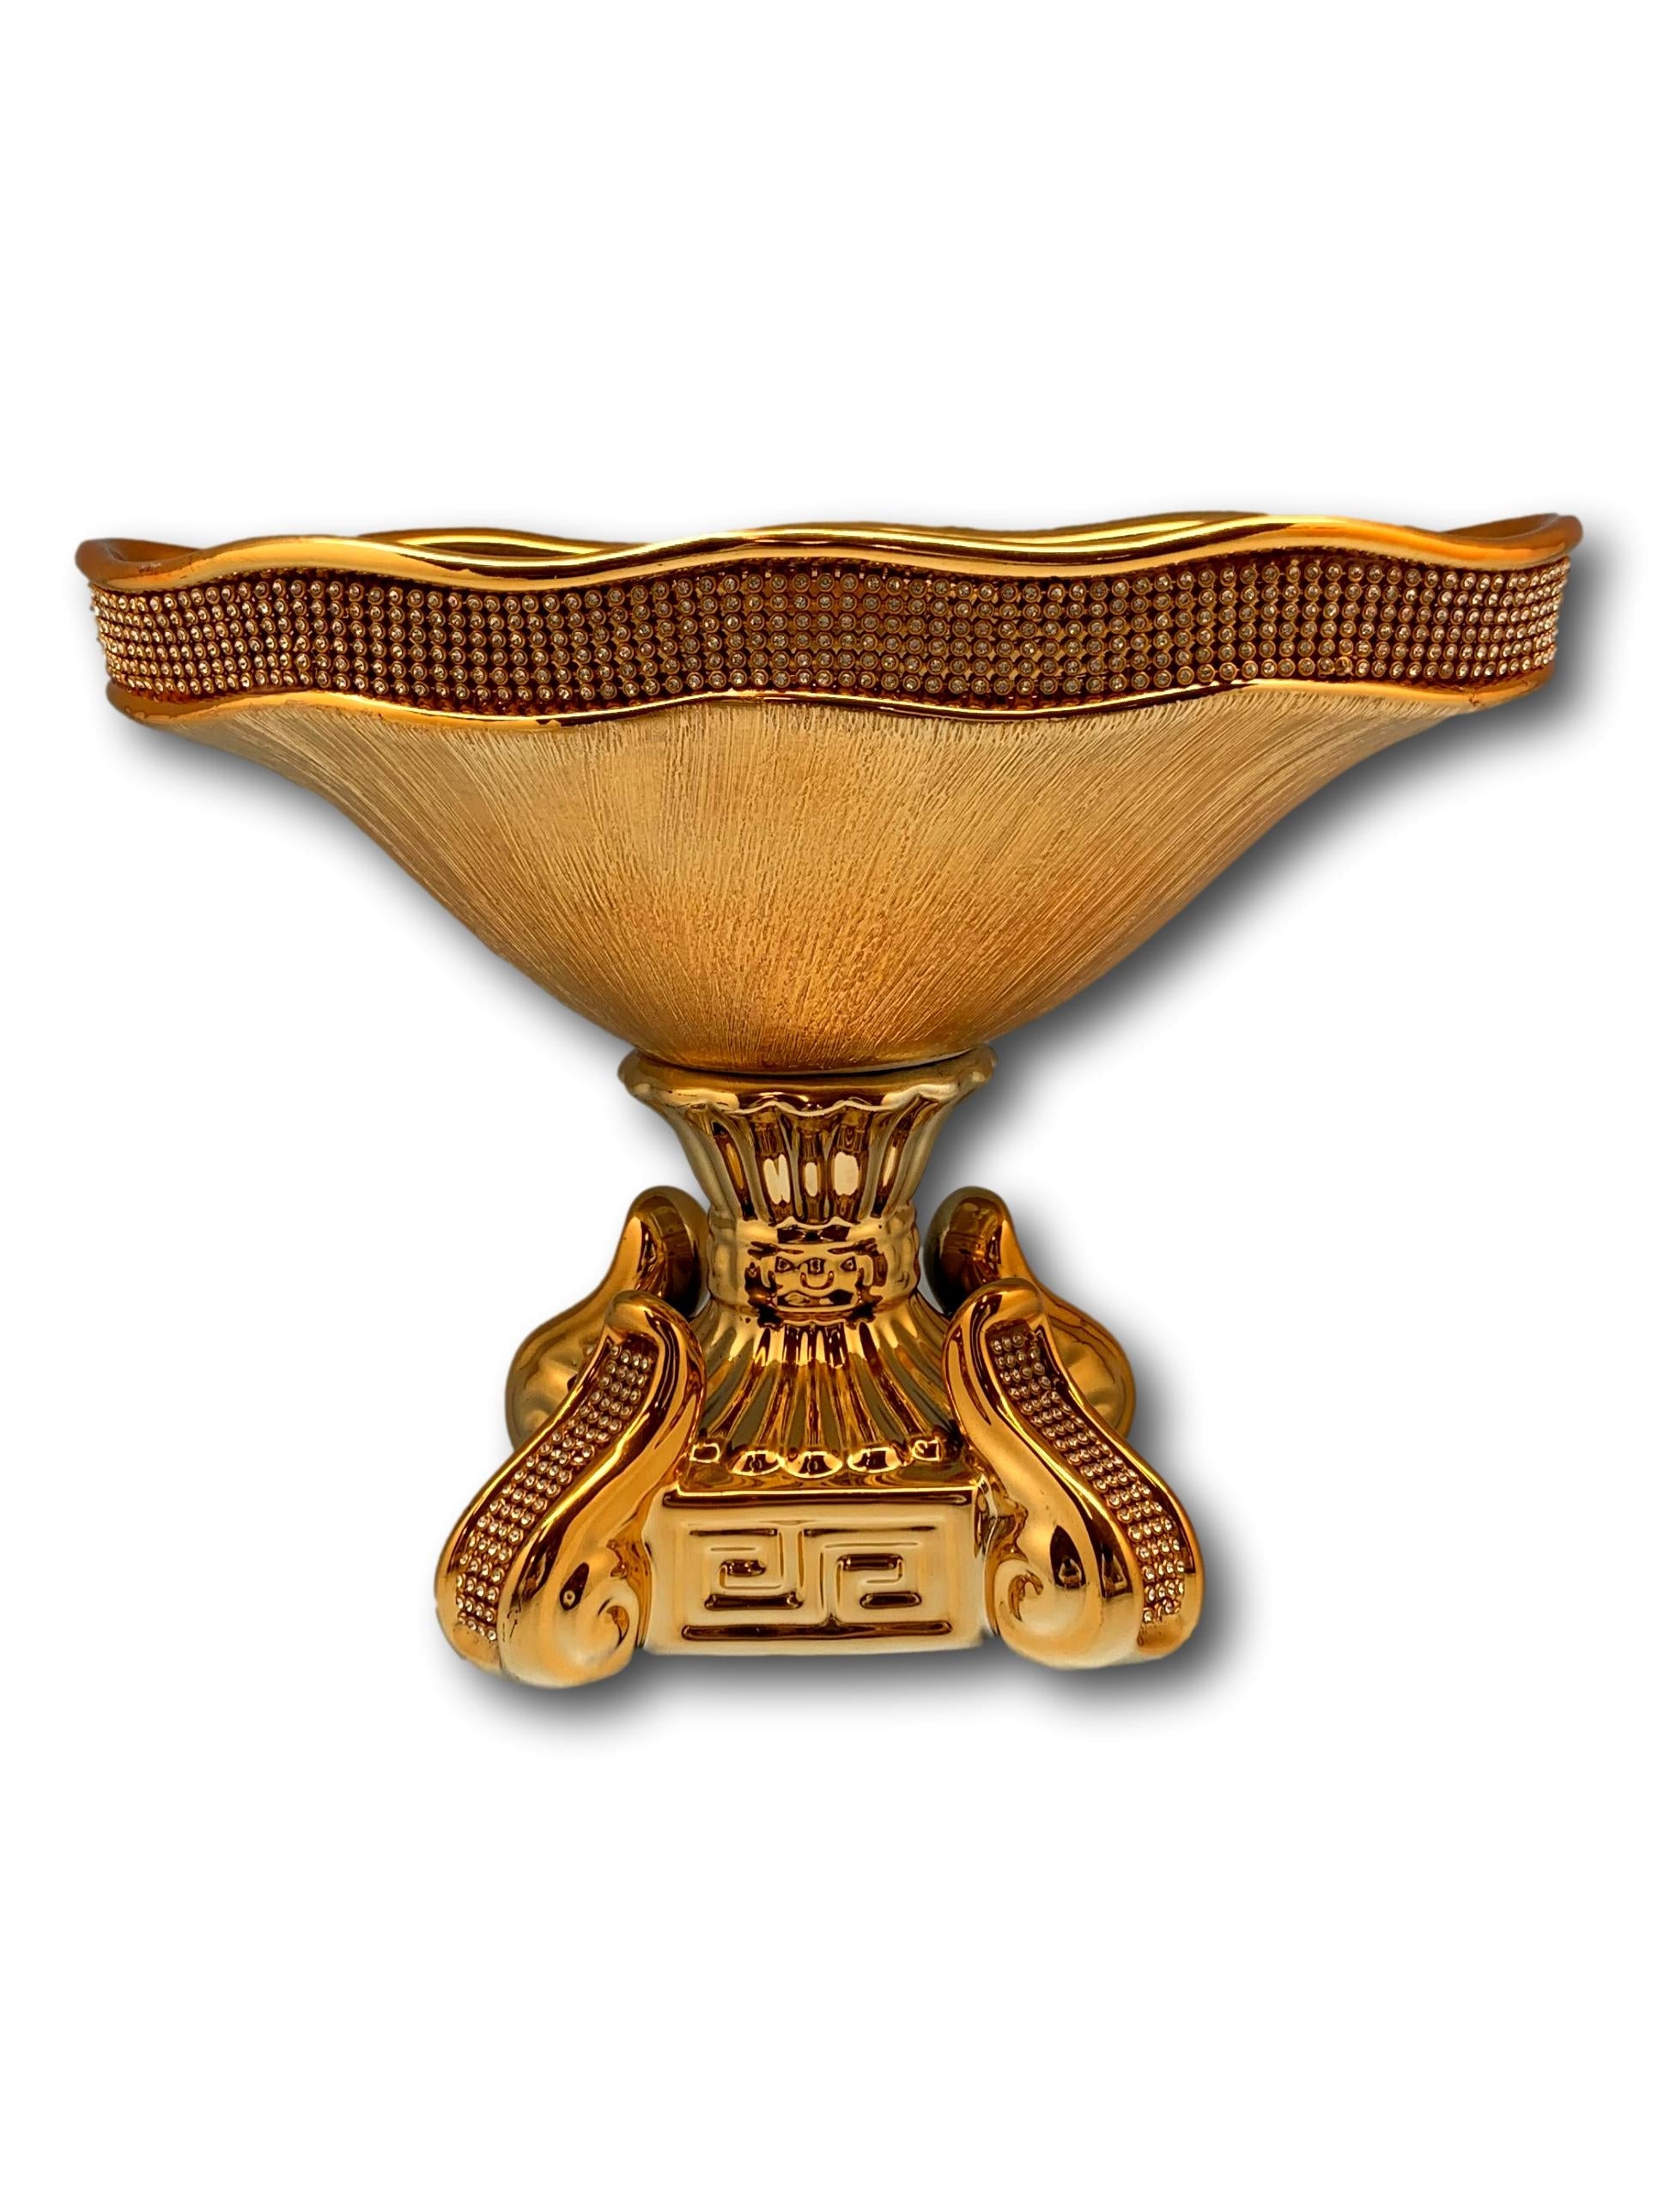 Keramik Vase Vergoldet